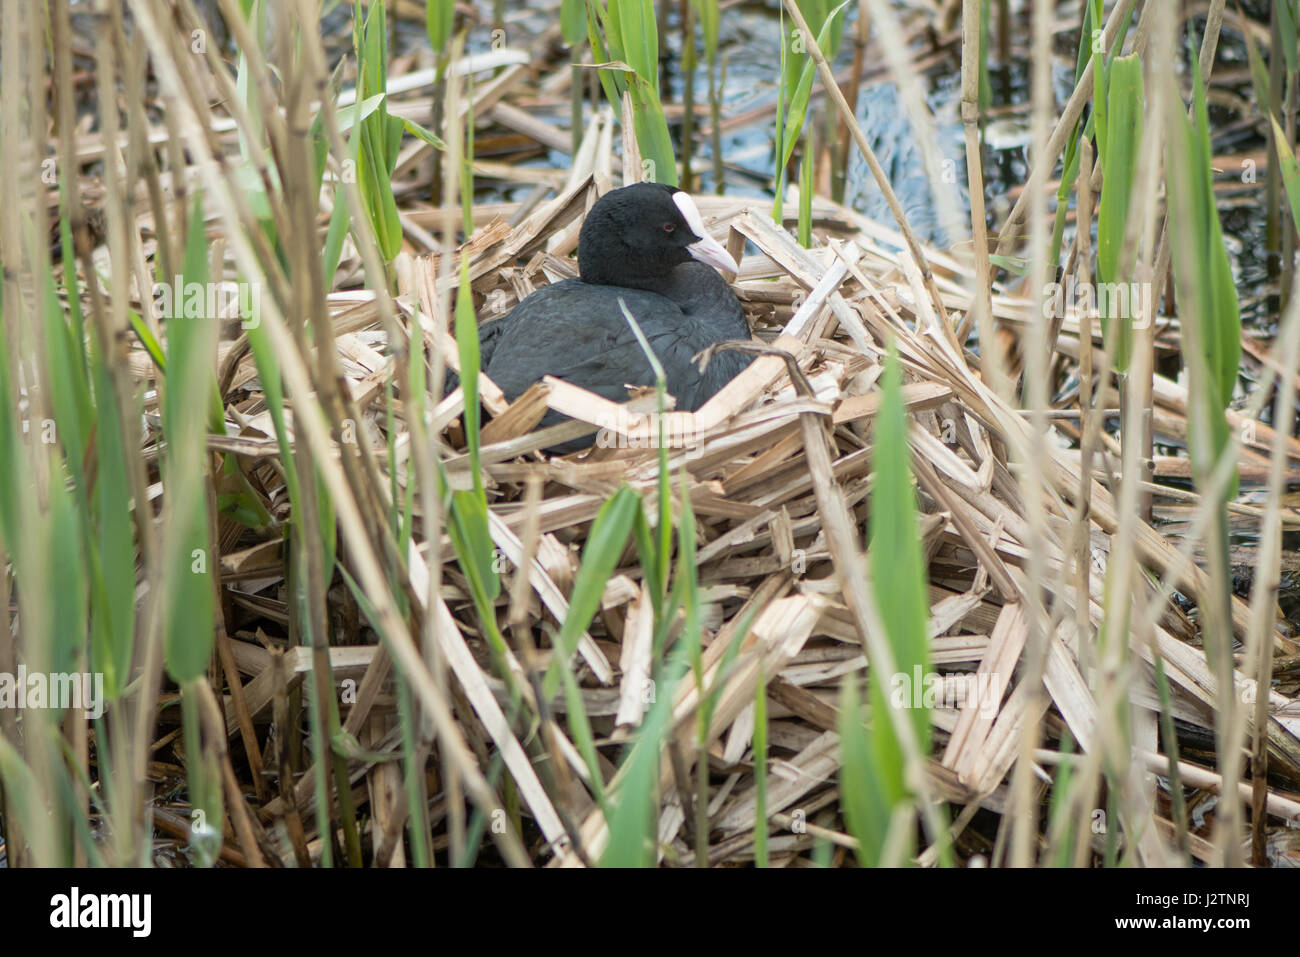 Focha Común (Fulica atra) en el nido. Ave de la familia Rallidae sentado encima de nido de juncos, incubando huevos Foto de stock